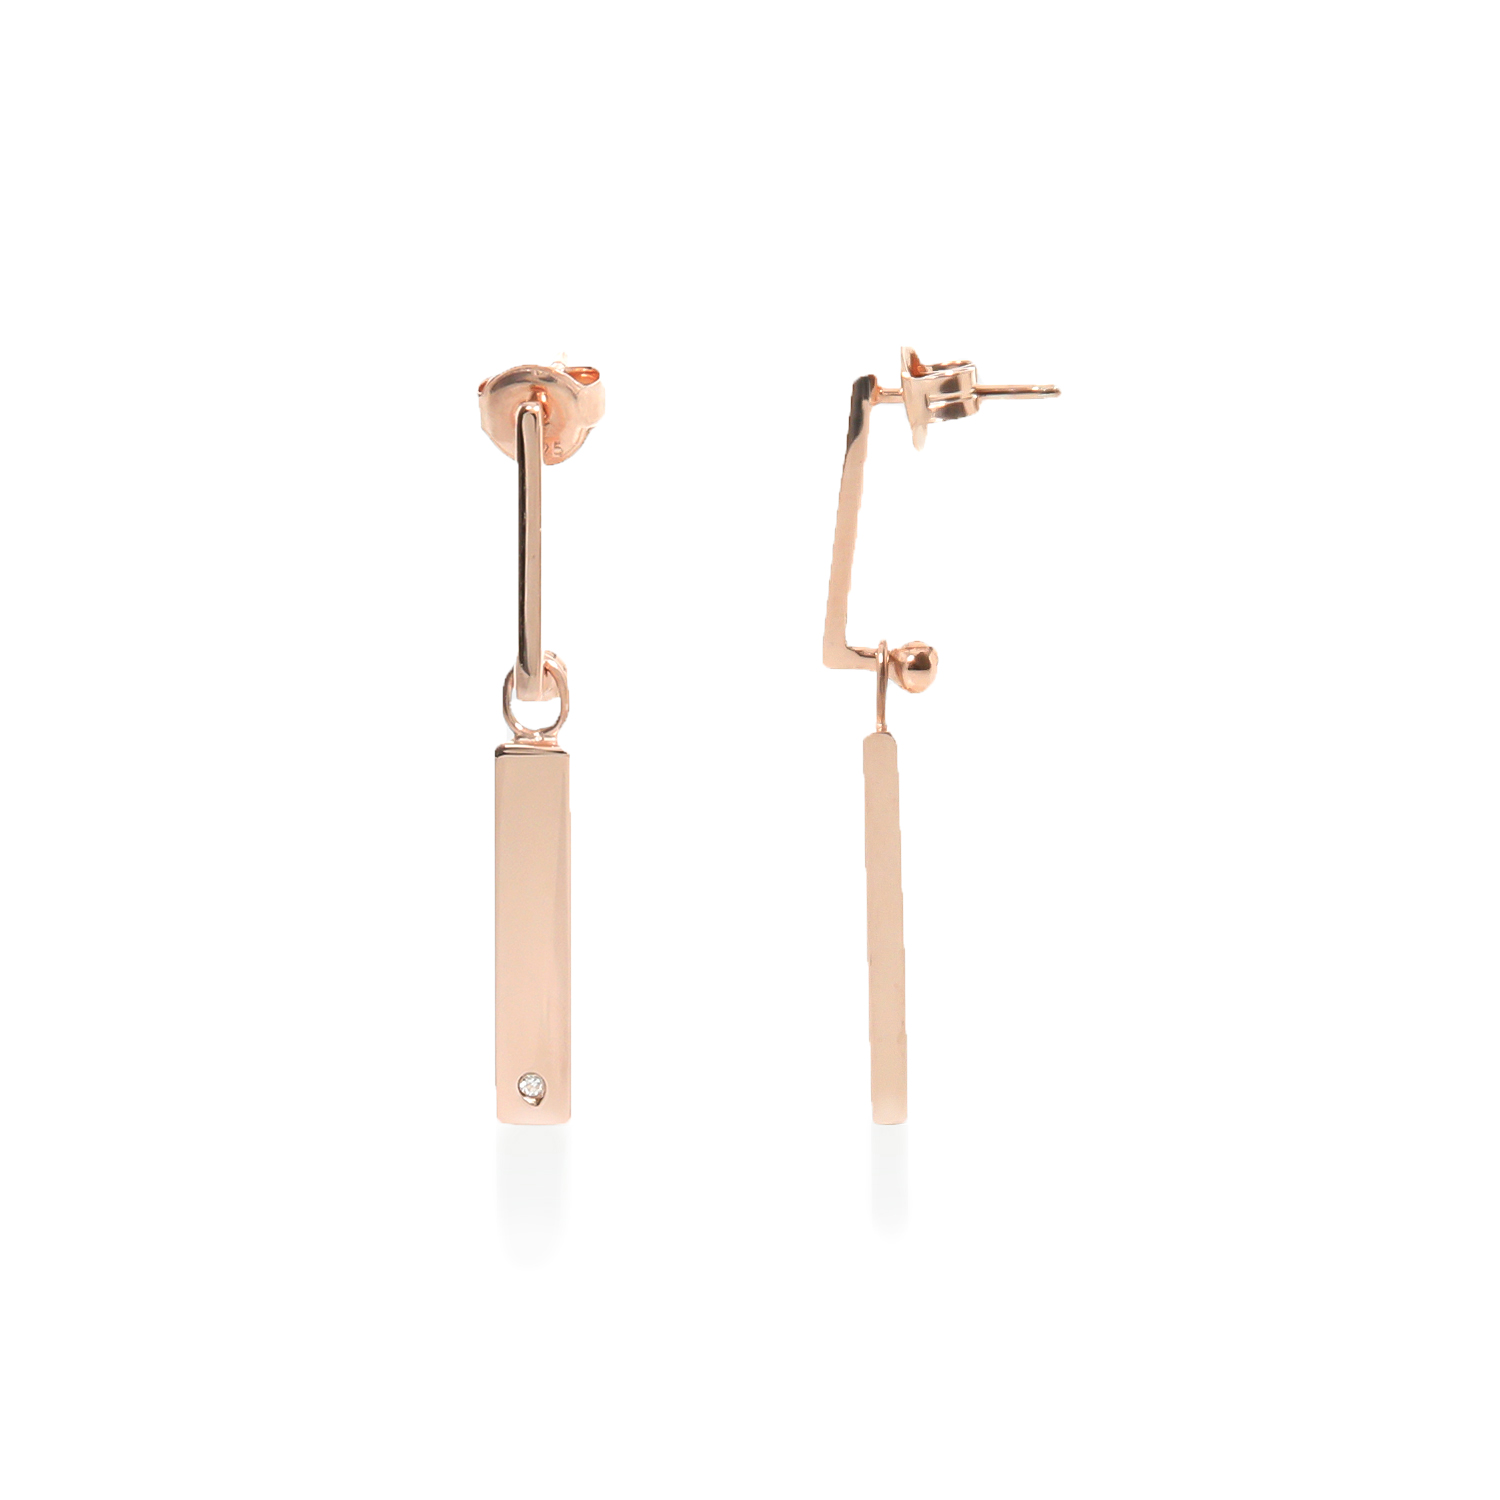 Γυναικεία/Αξεσουάρ/Κοσμήματα/Σκουλαρίκια FOLLI FOLLIE - Γυναικεία ασημένια κρεμαστά σκουλαρίκια FOLLI FOLLIE PLATE ροζ χρυσό